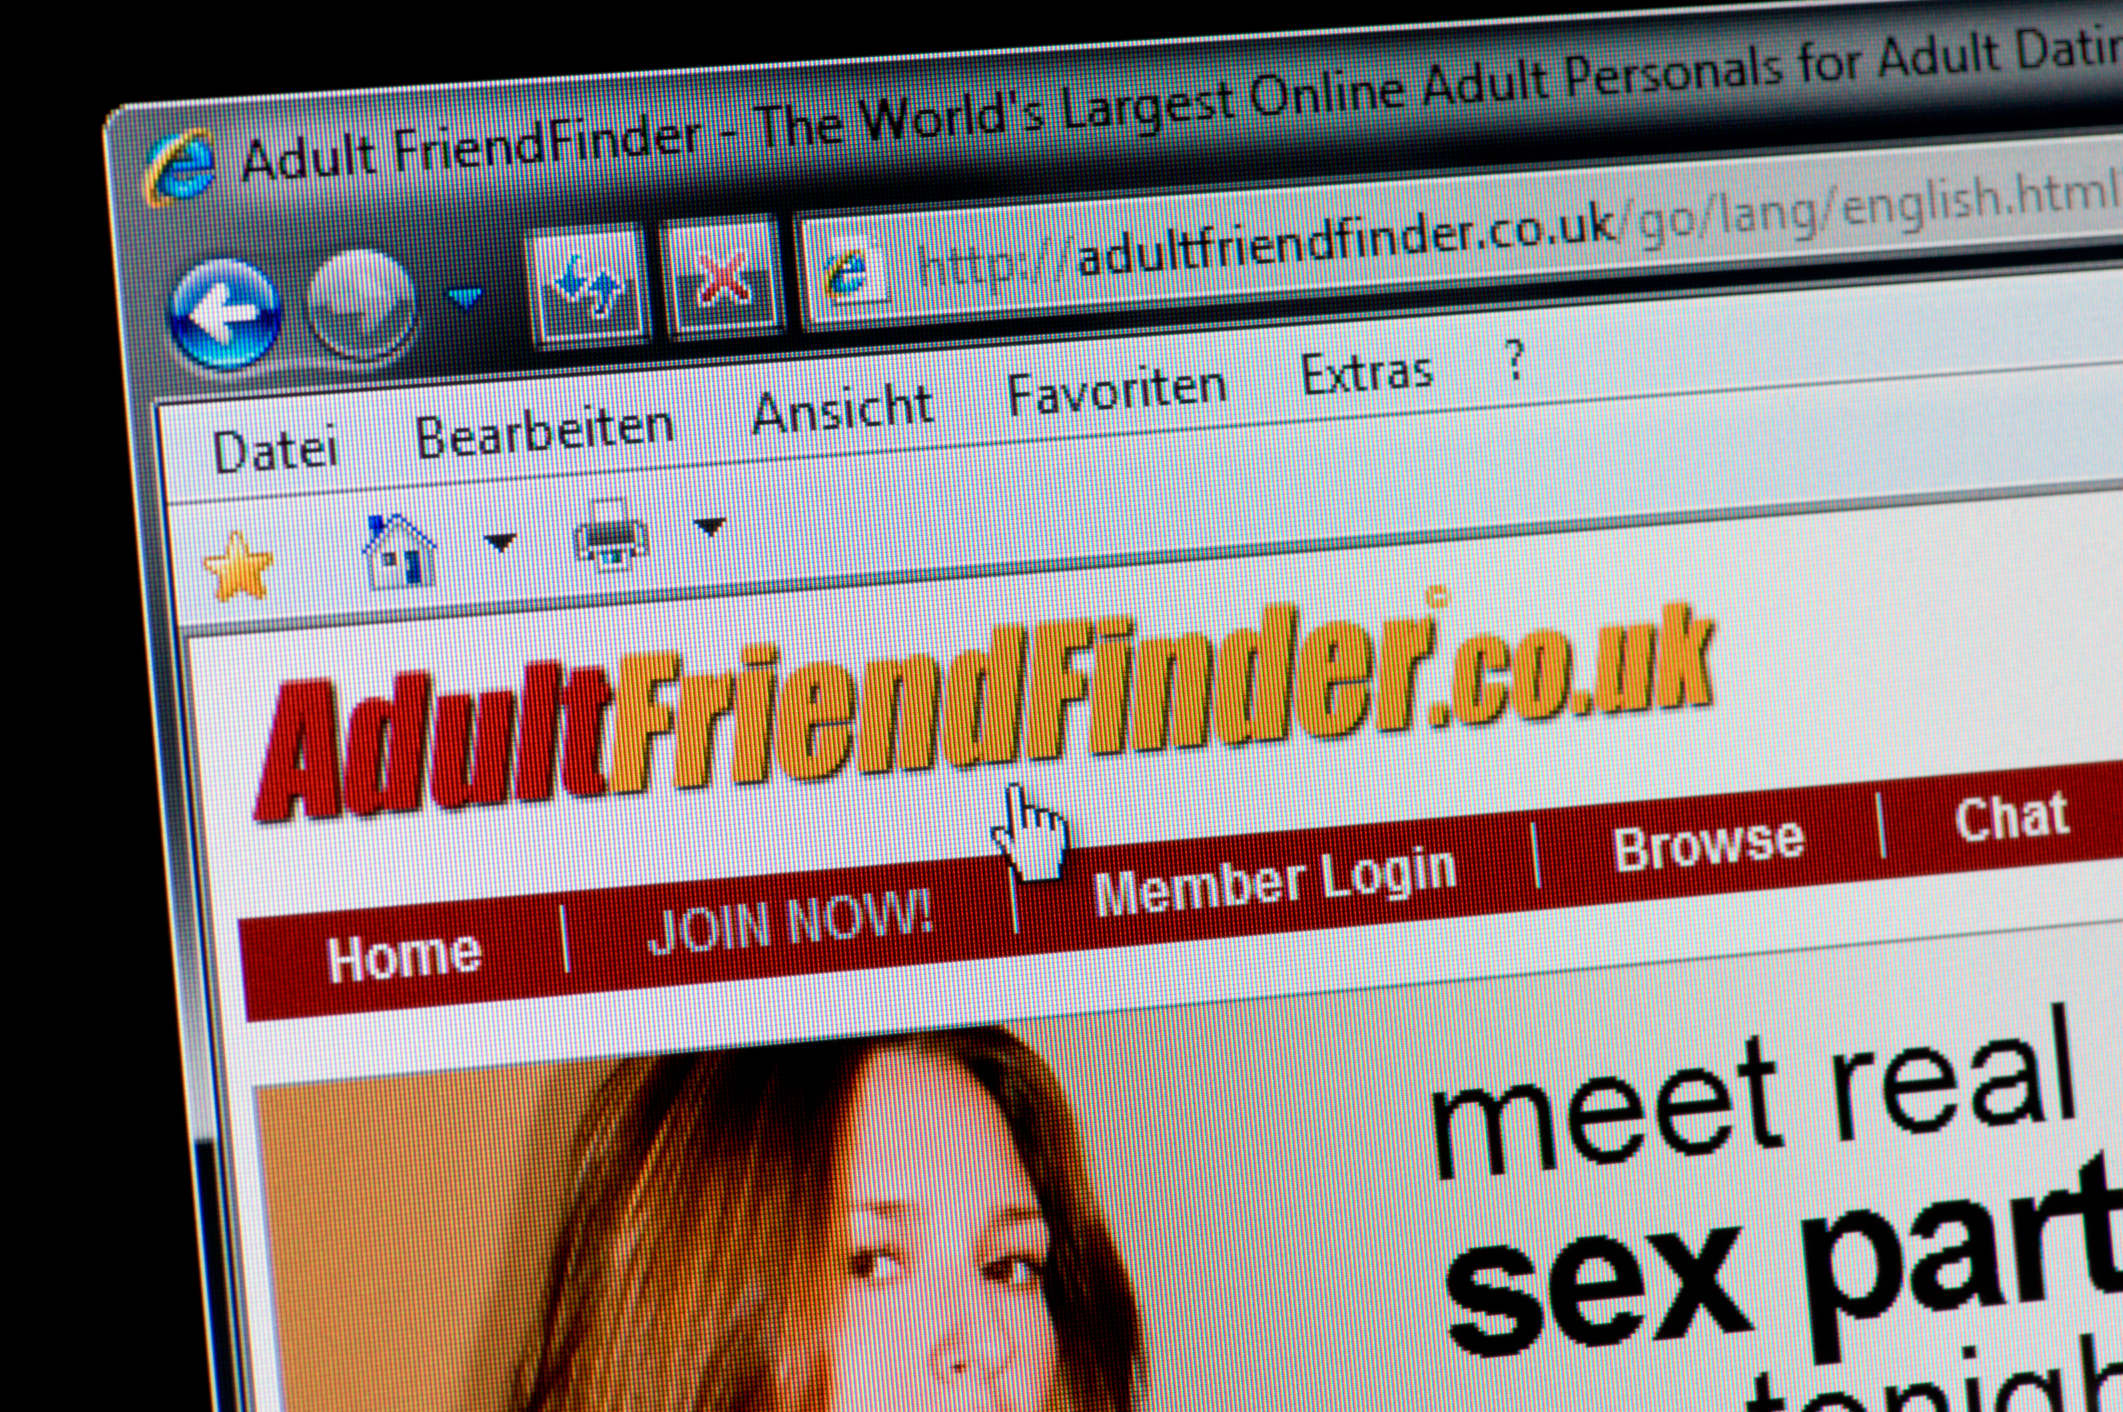 christopher somera recommends Adult Friend Finder V